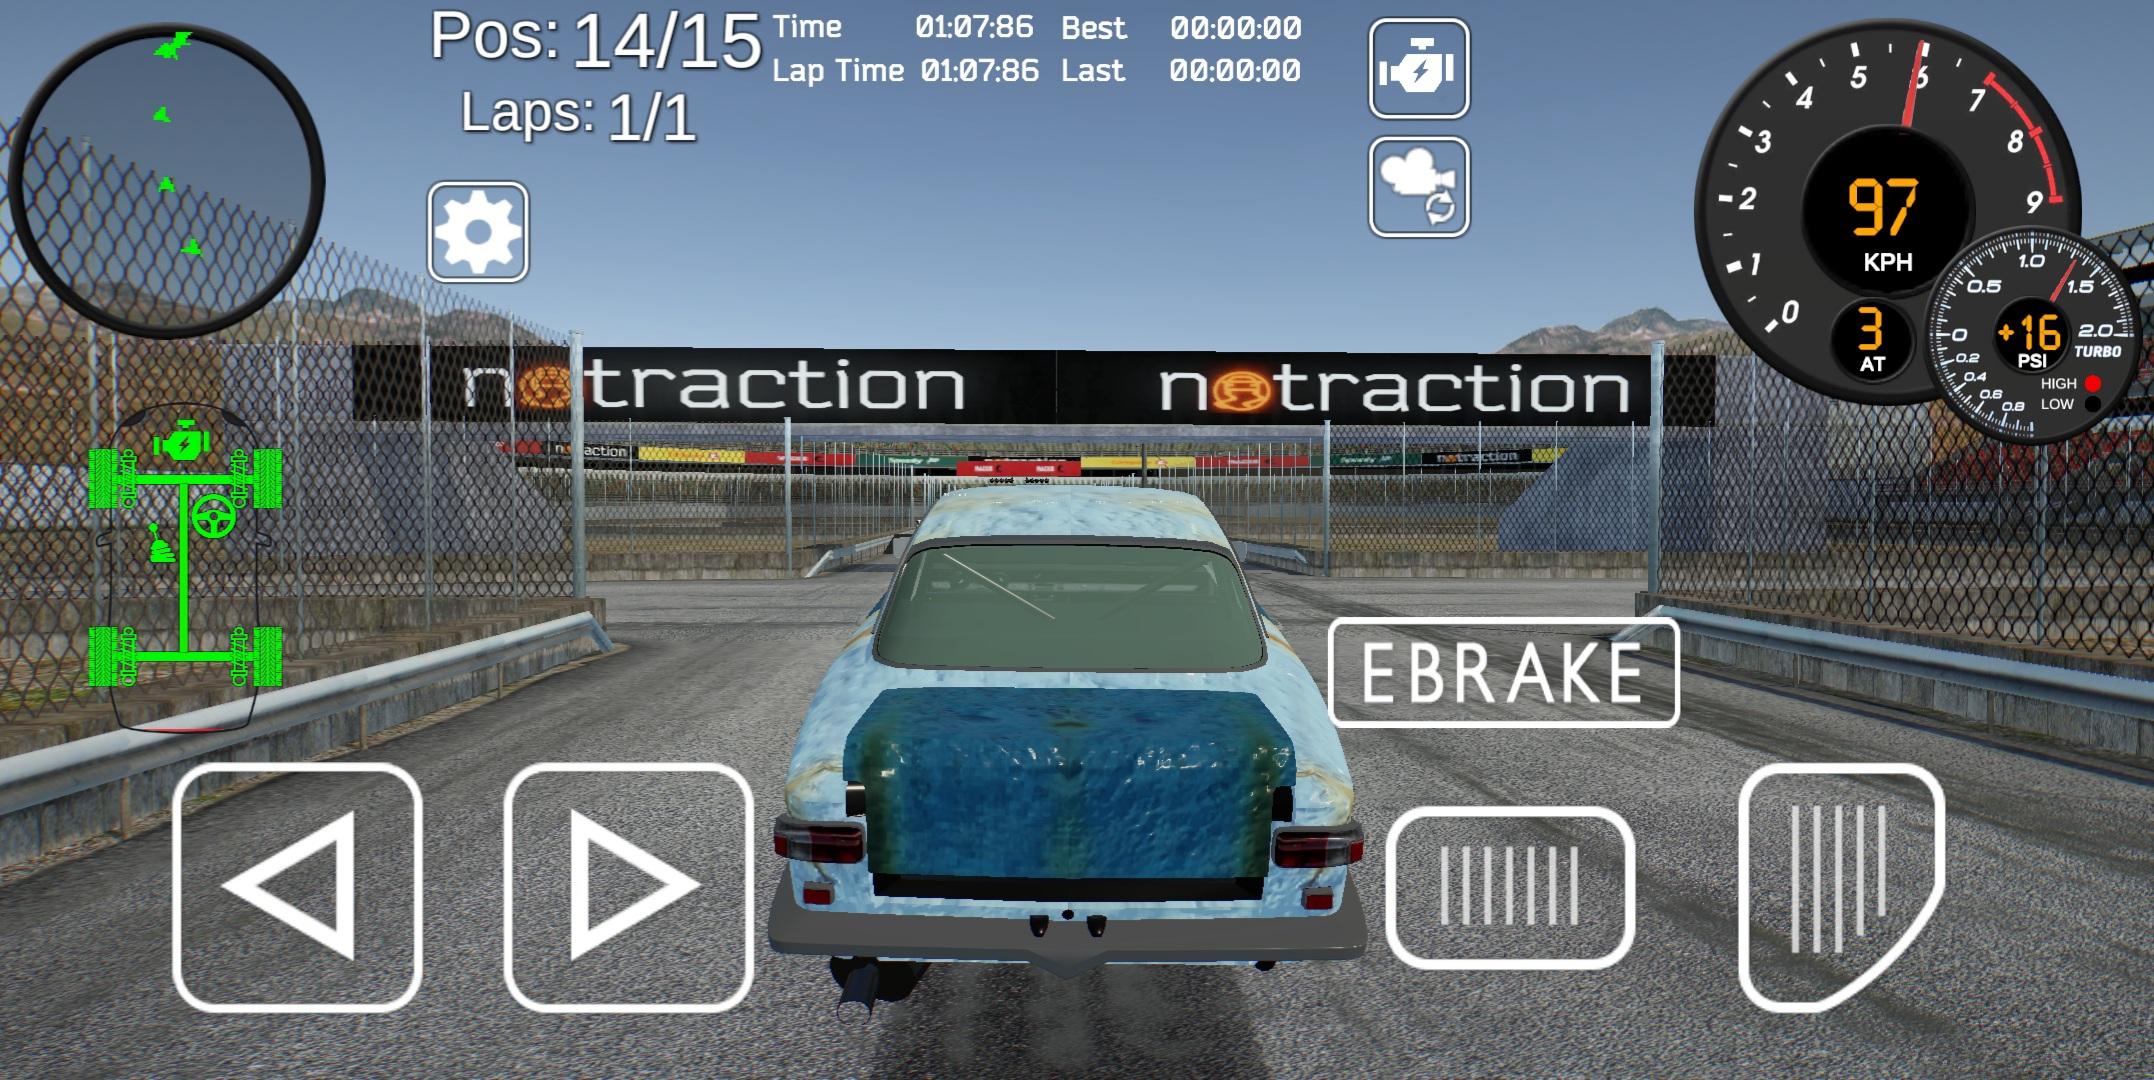 Tuner Z - Car Tuning and Racing Simulator 0.9.6.2.4.6 Screenshot 23